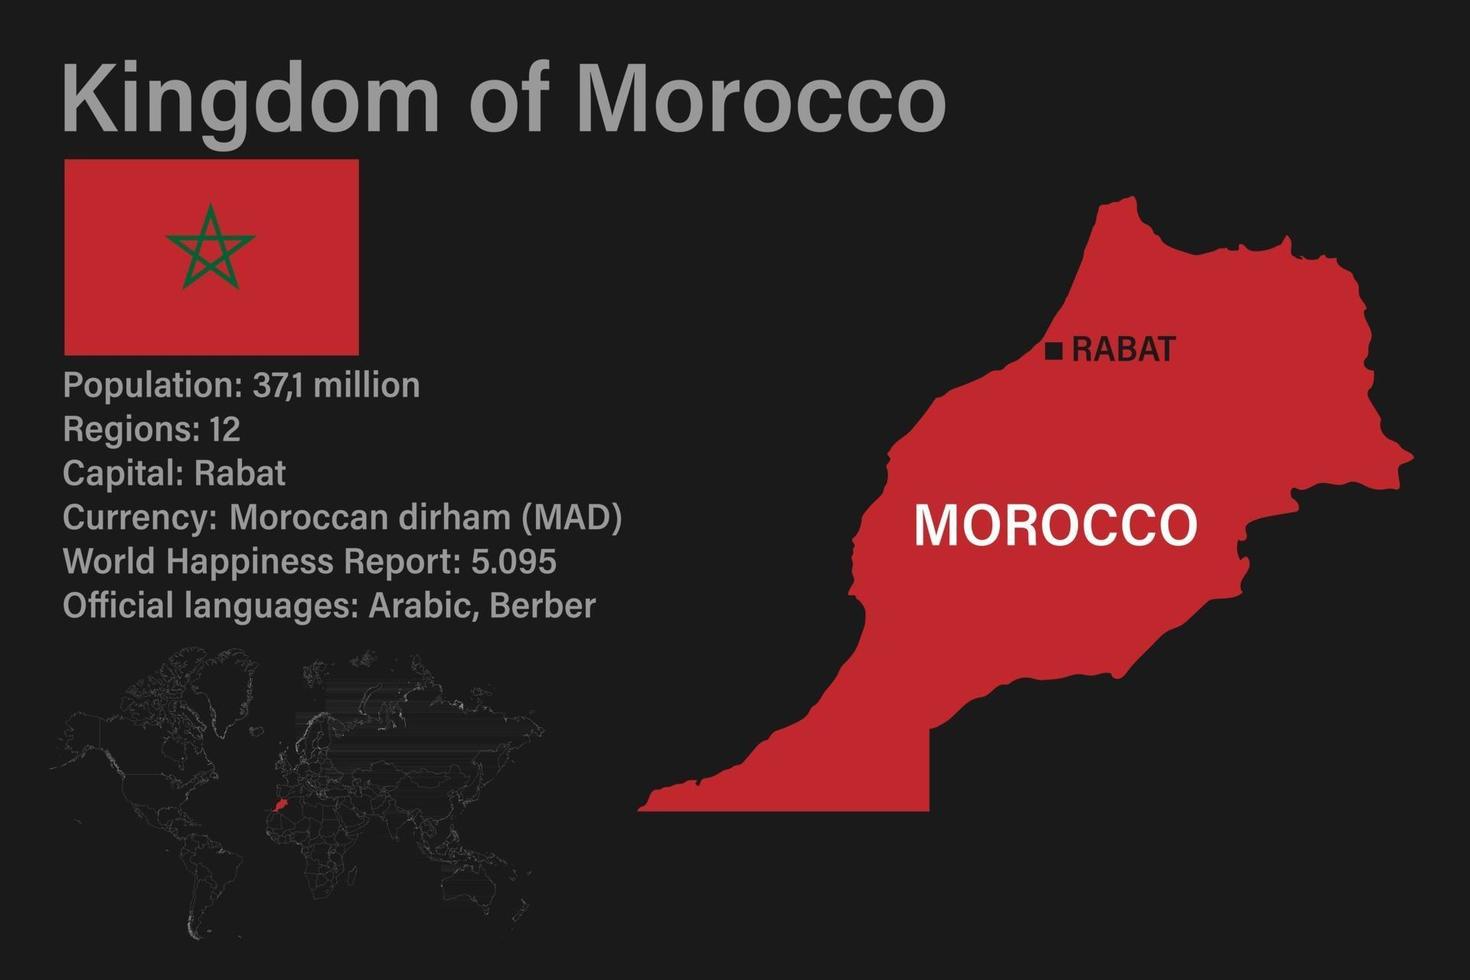 hochdetaillierte Marokko Karte mit Flagge, Hauptstadt und kleiner Weltkarte vektor